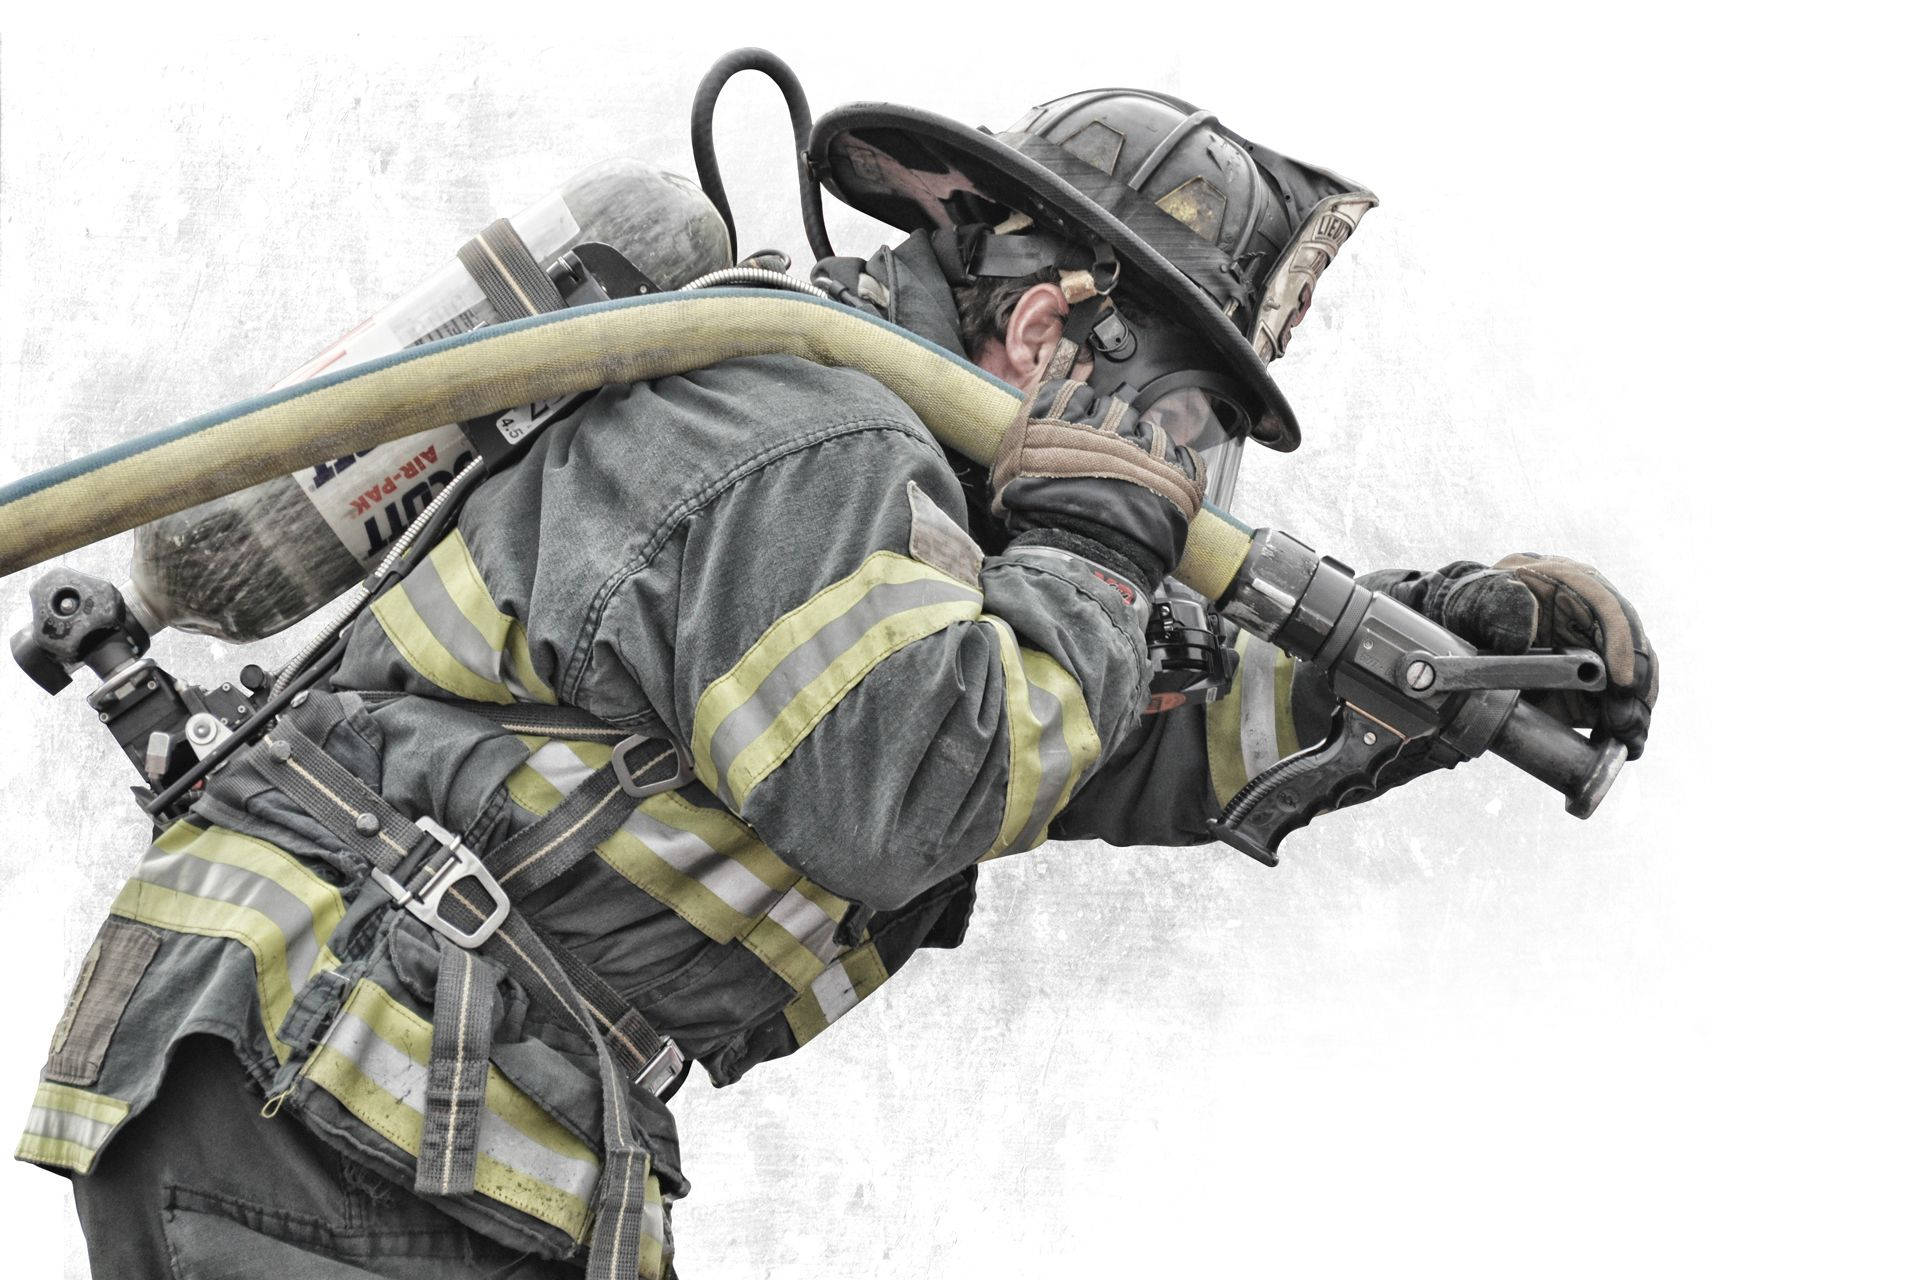 Fireman With A Water Hose Art Wallpaper